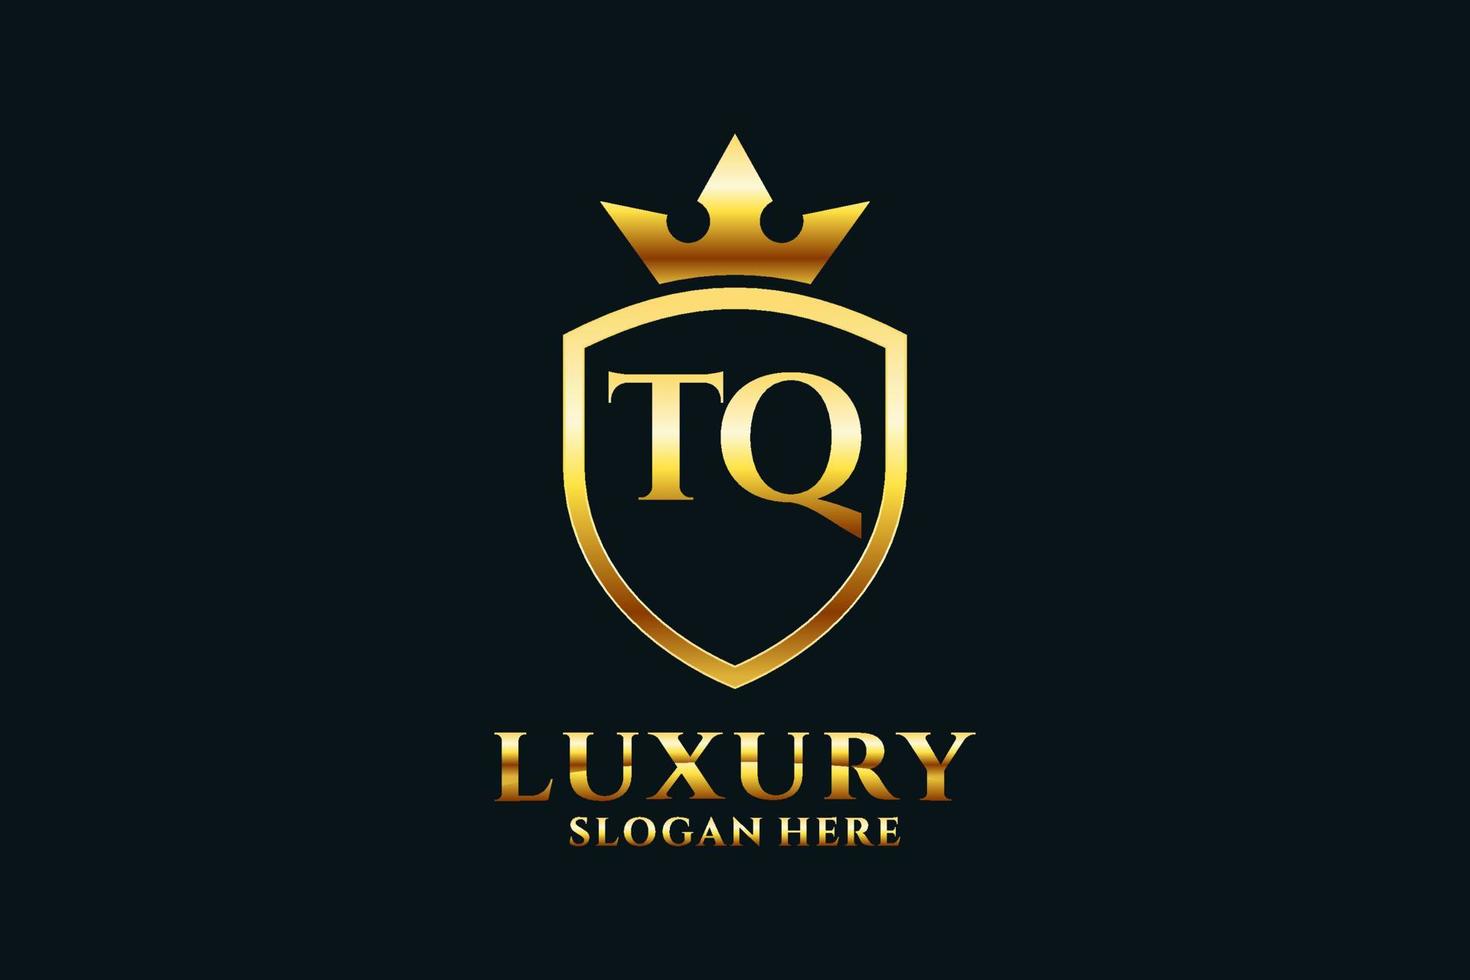 logo monogramme de luxe élégant initial tq ou modèle de badge avec volutes et couronne royale - parfait pour les projets de marque de luxe vecteur